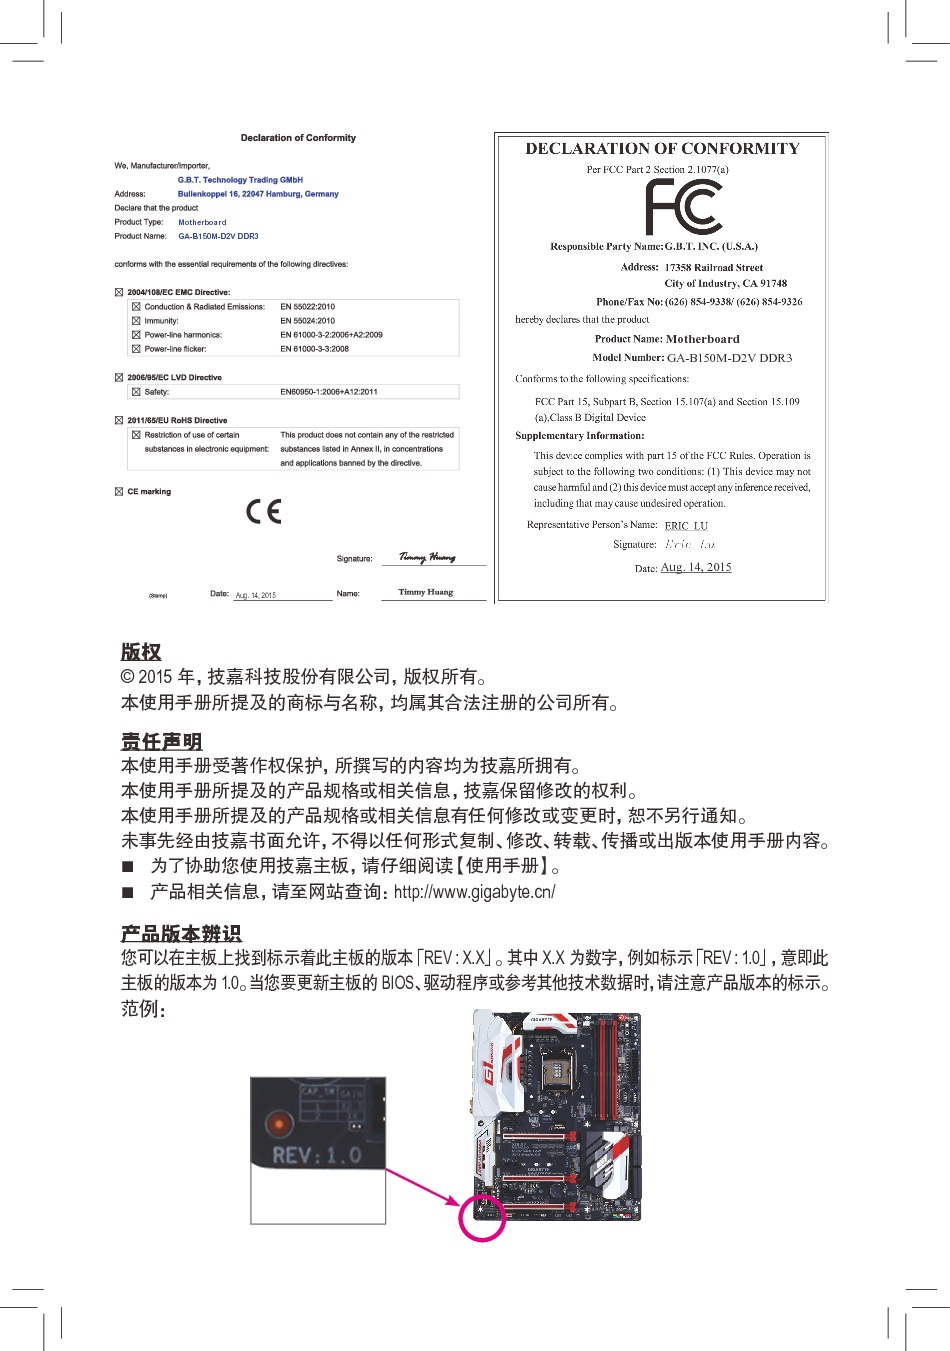 技嘉 Gigabyte GA-B150M-D2V DDR3 使用手册 第1页